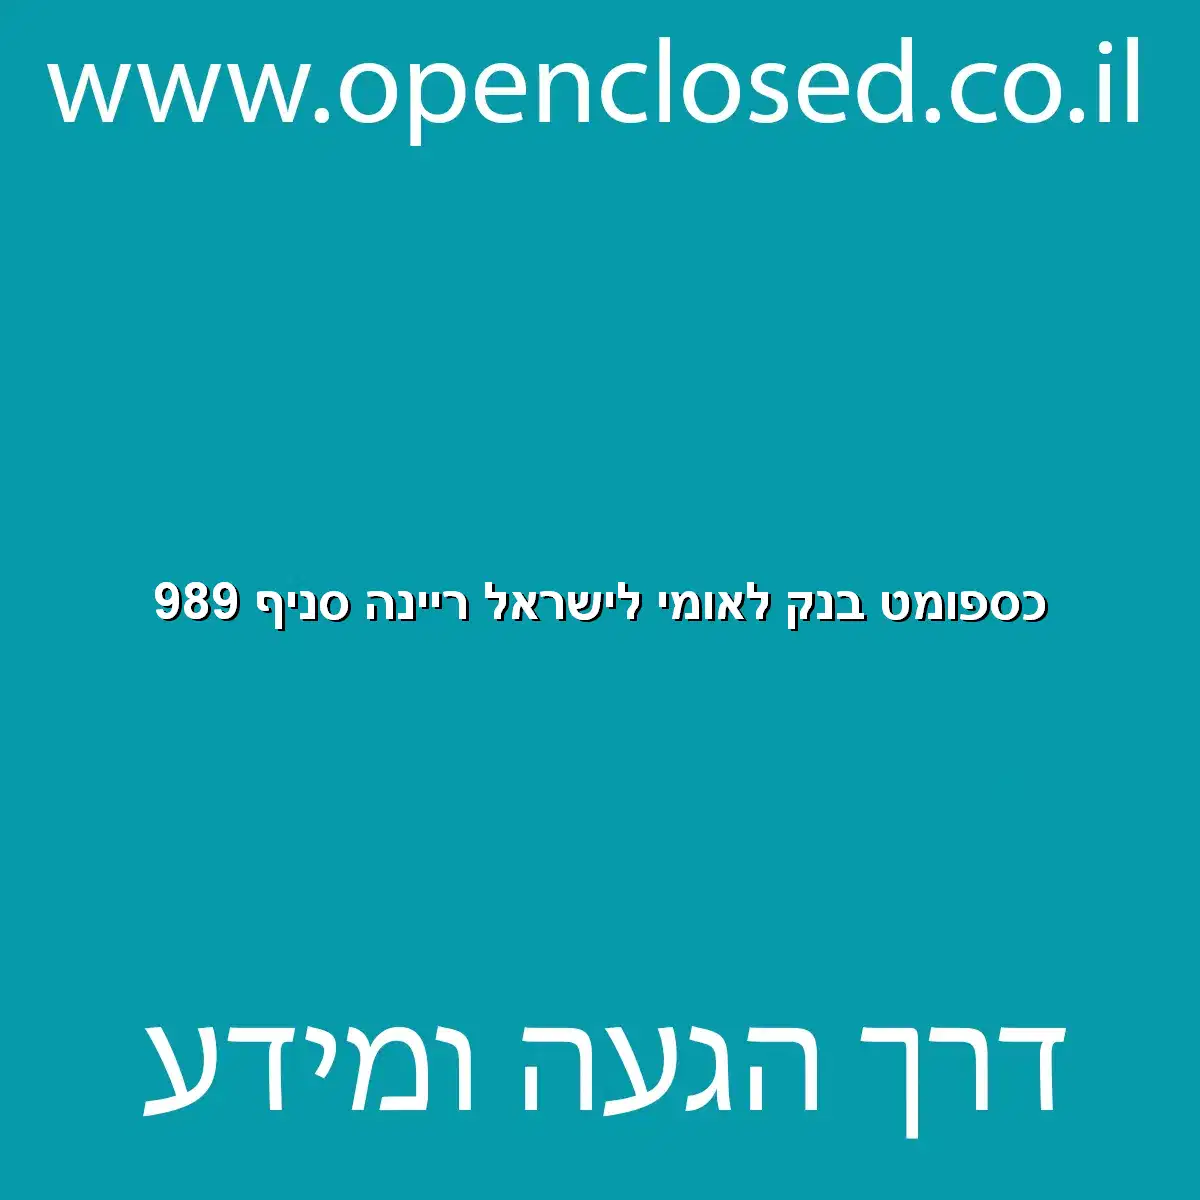 כספומט בנק לאומי לישראל ריינה סניף 989